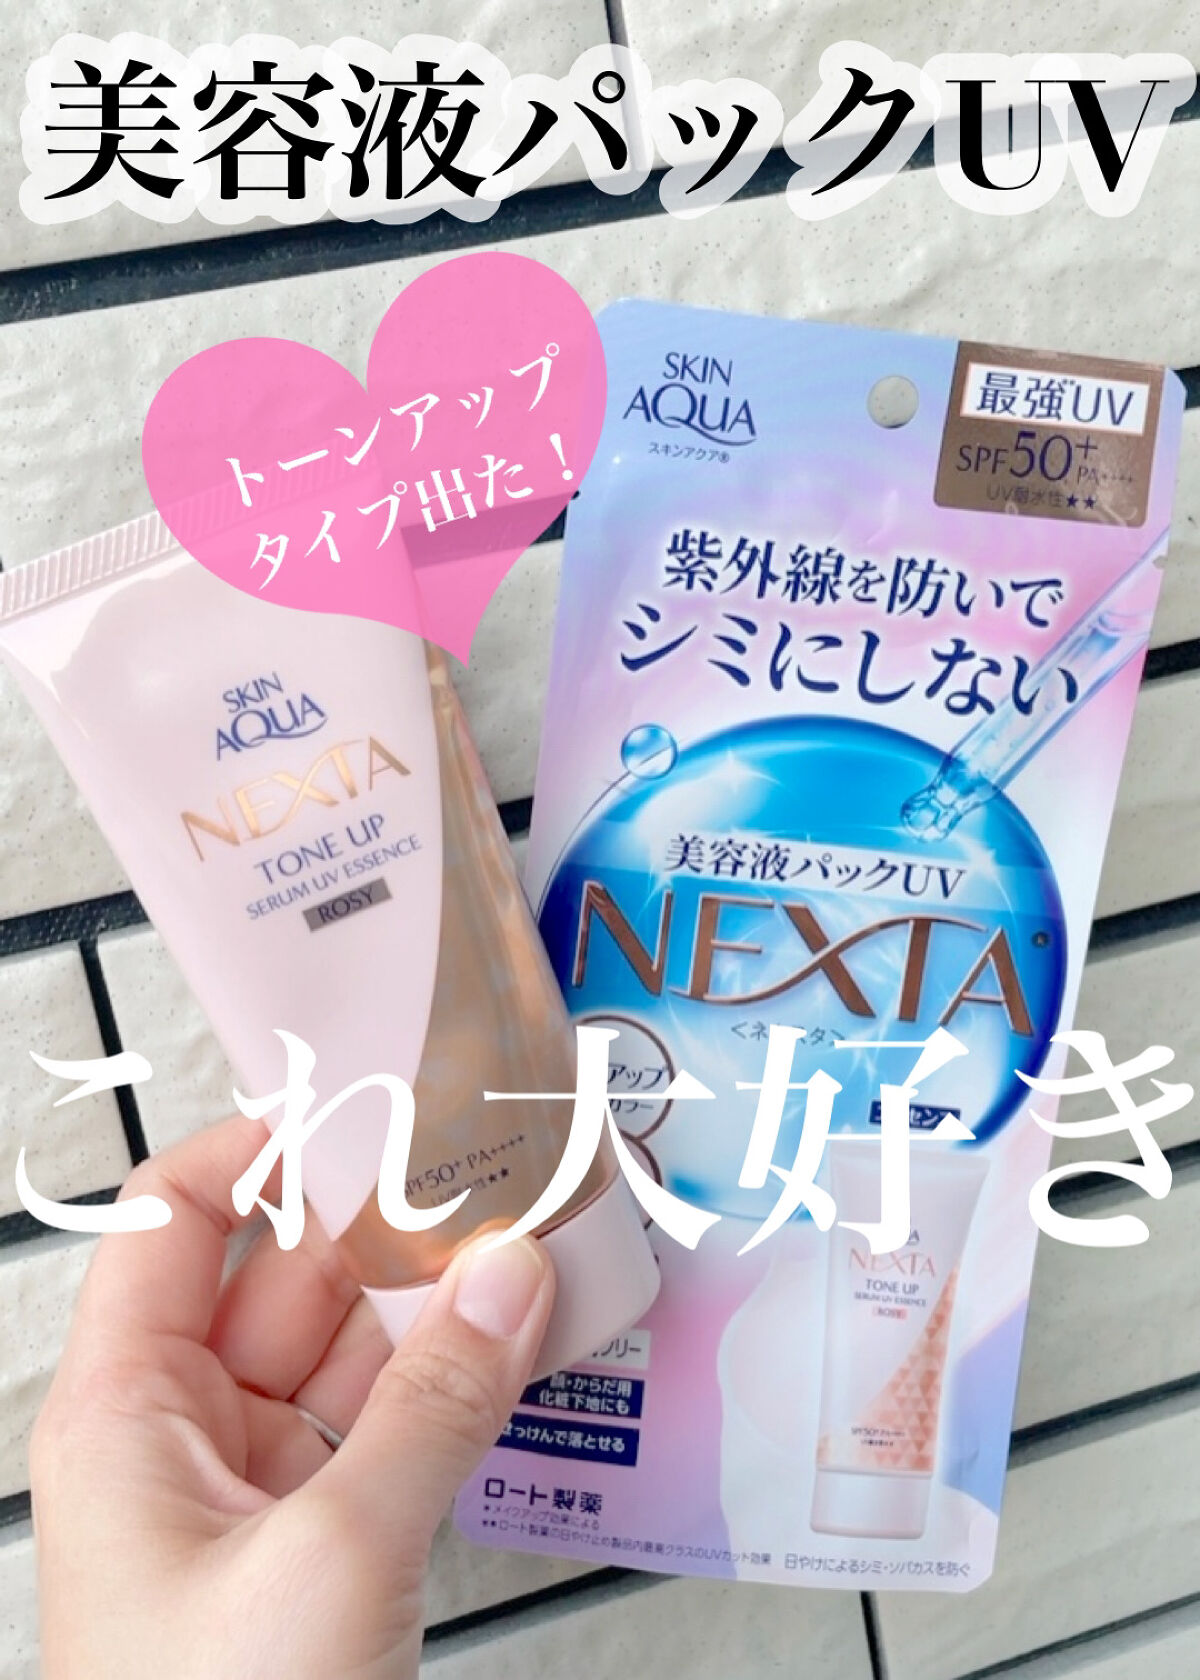 ロート製薬・スキンアクア・NEXTA・ネクスタ・美容液UVプロテクト